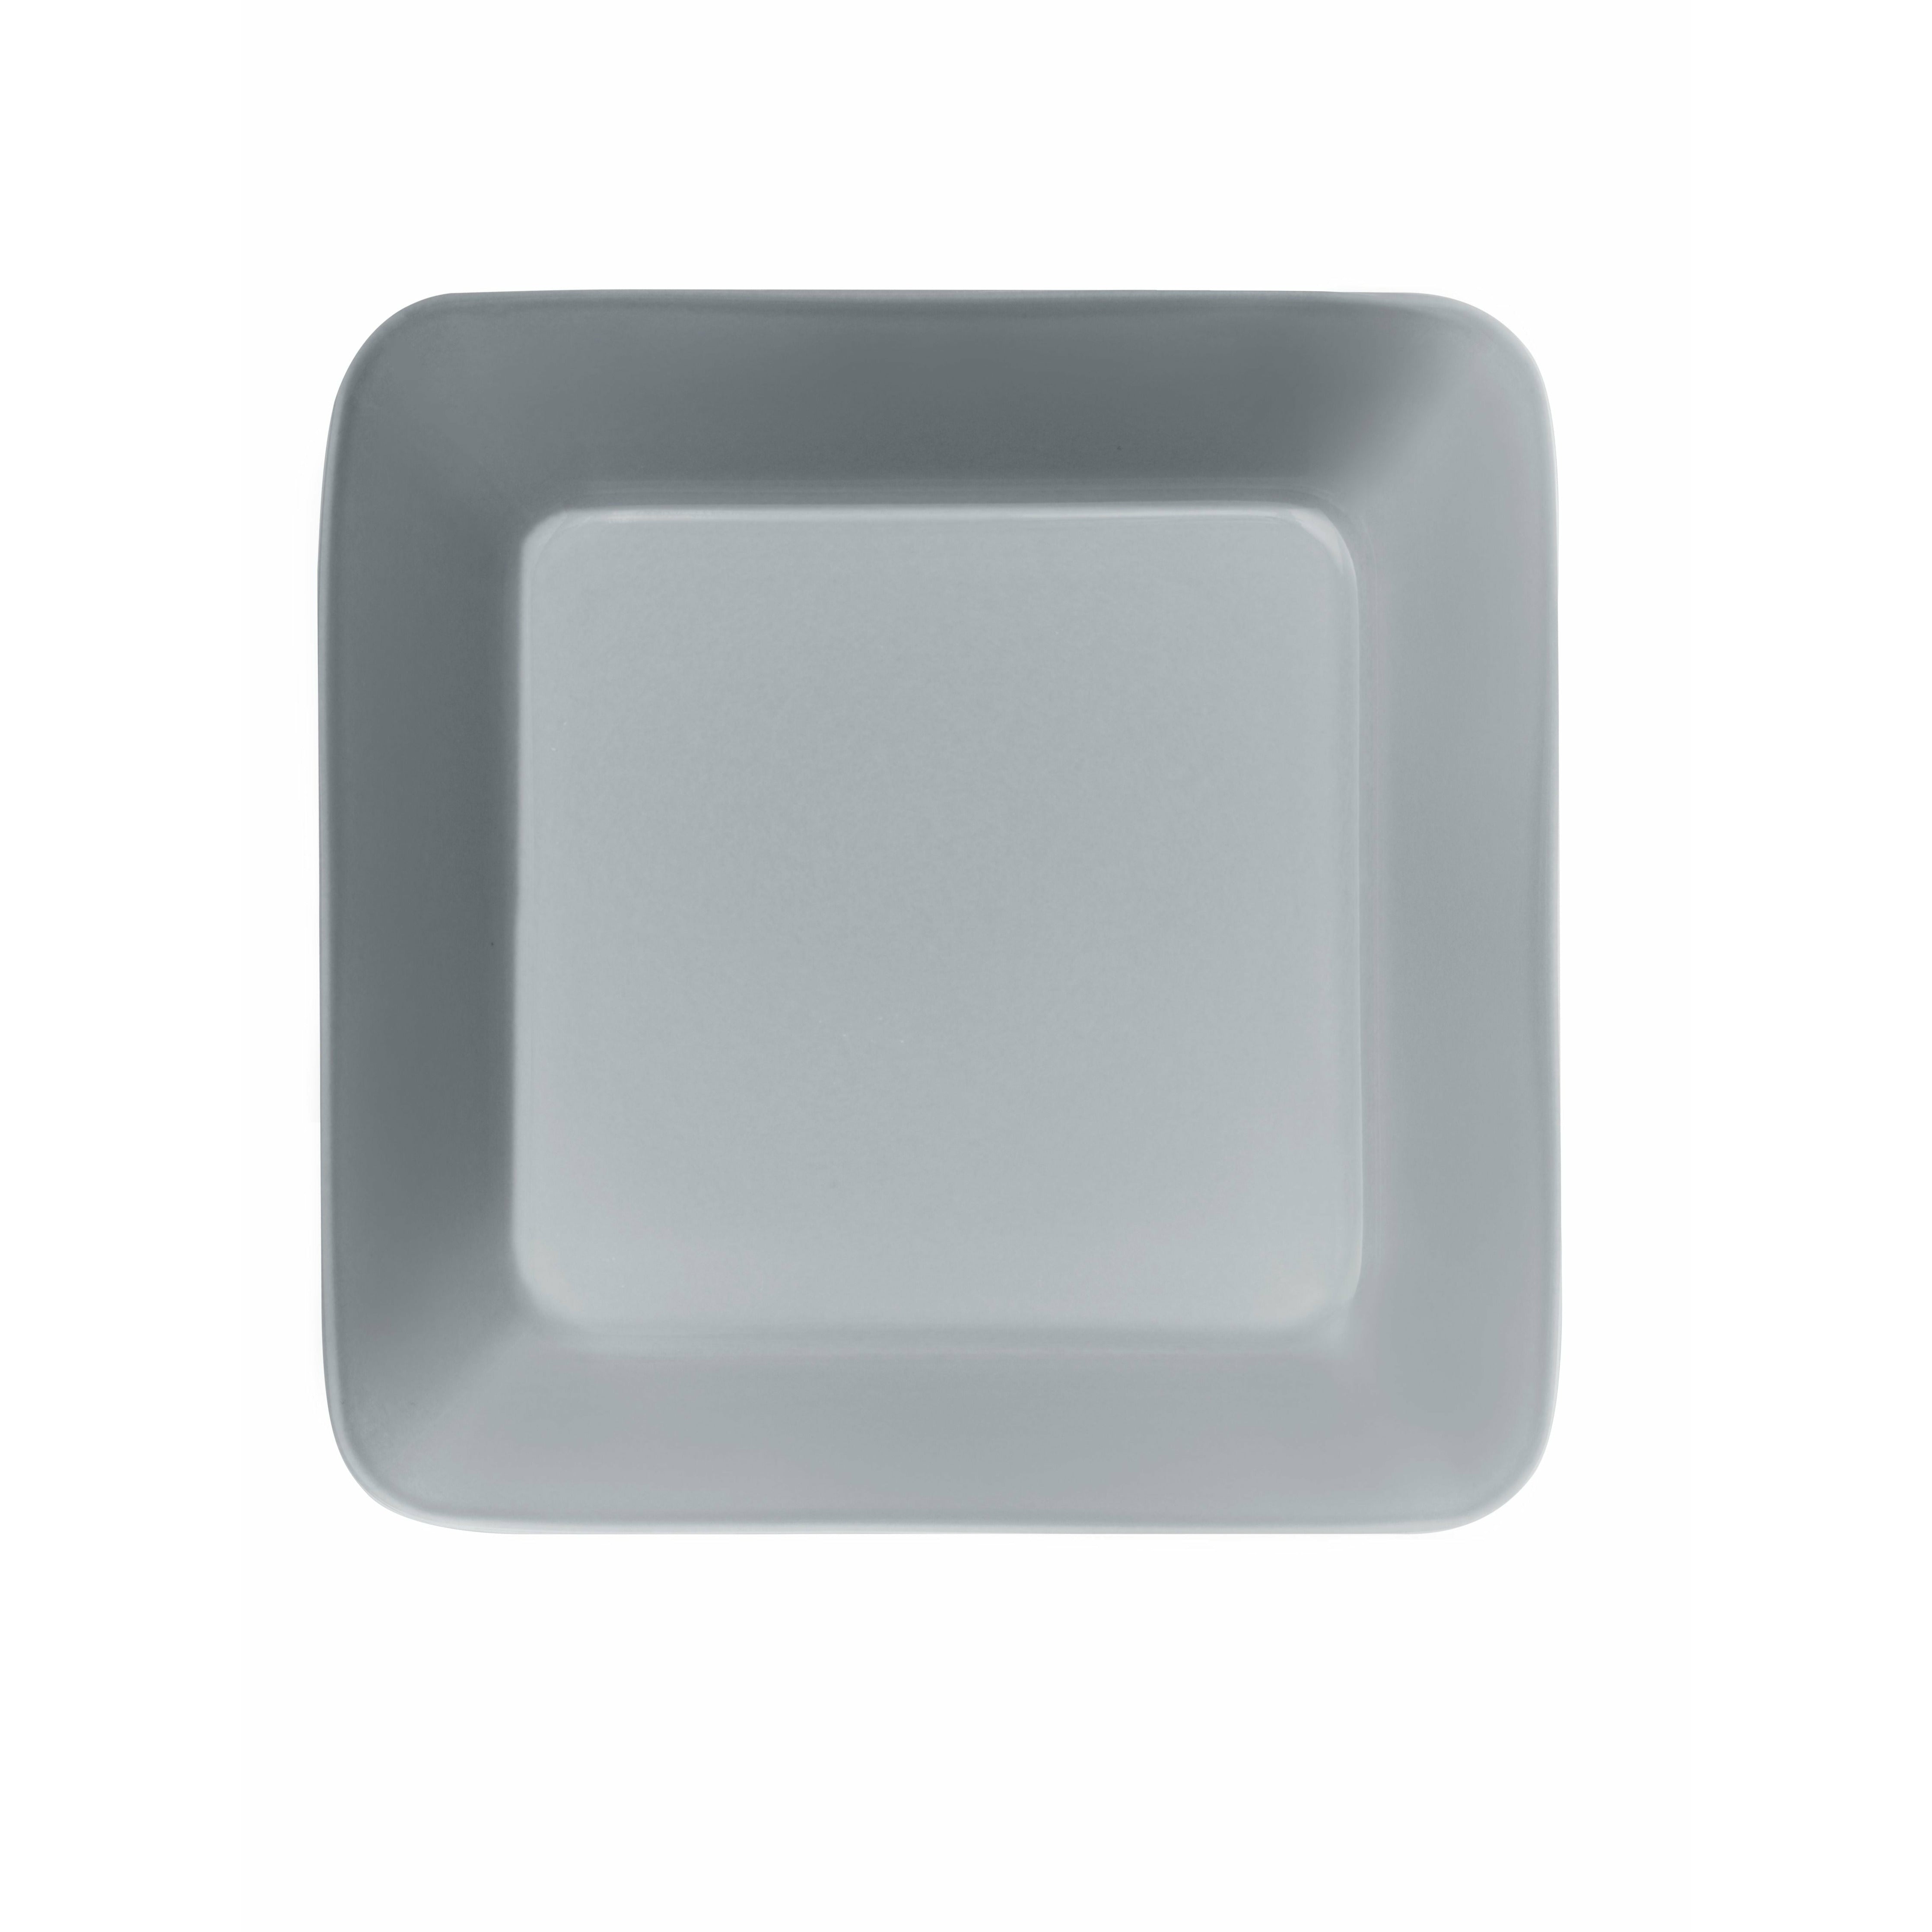 Iittala Teema Plate 16x16cm, Pearl Grey